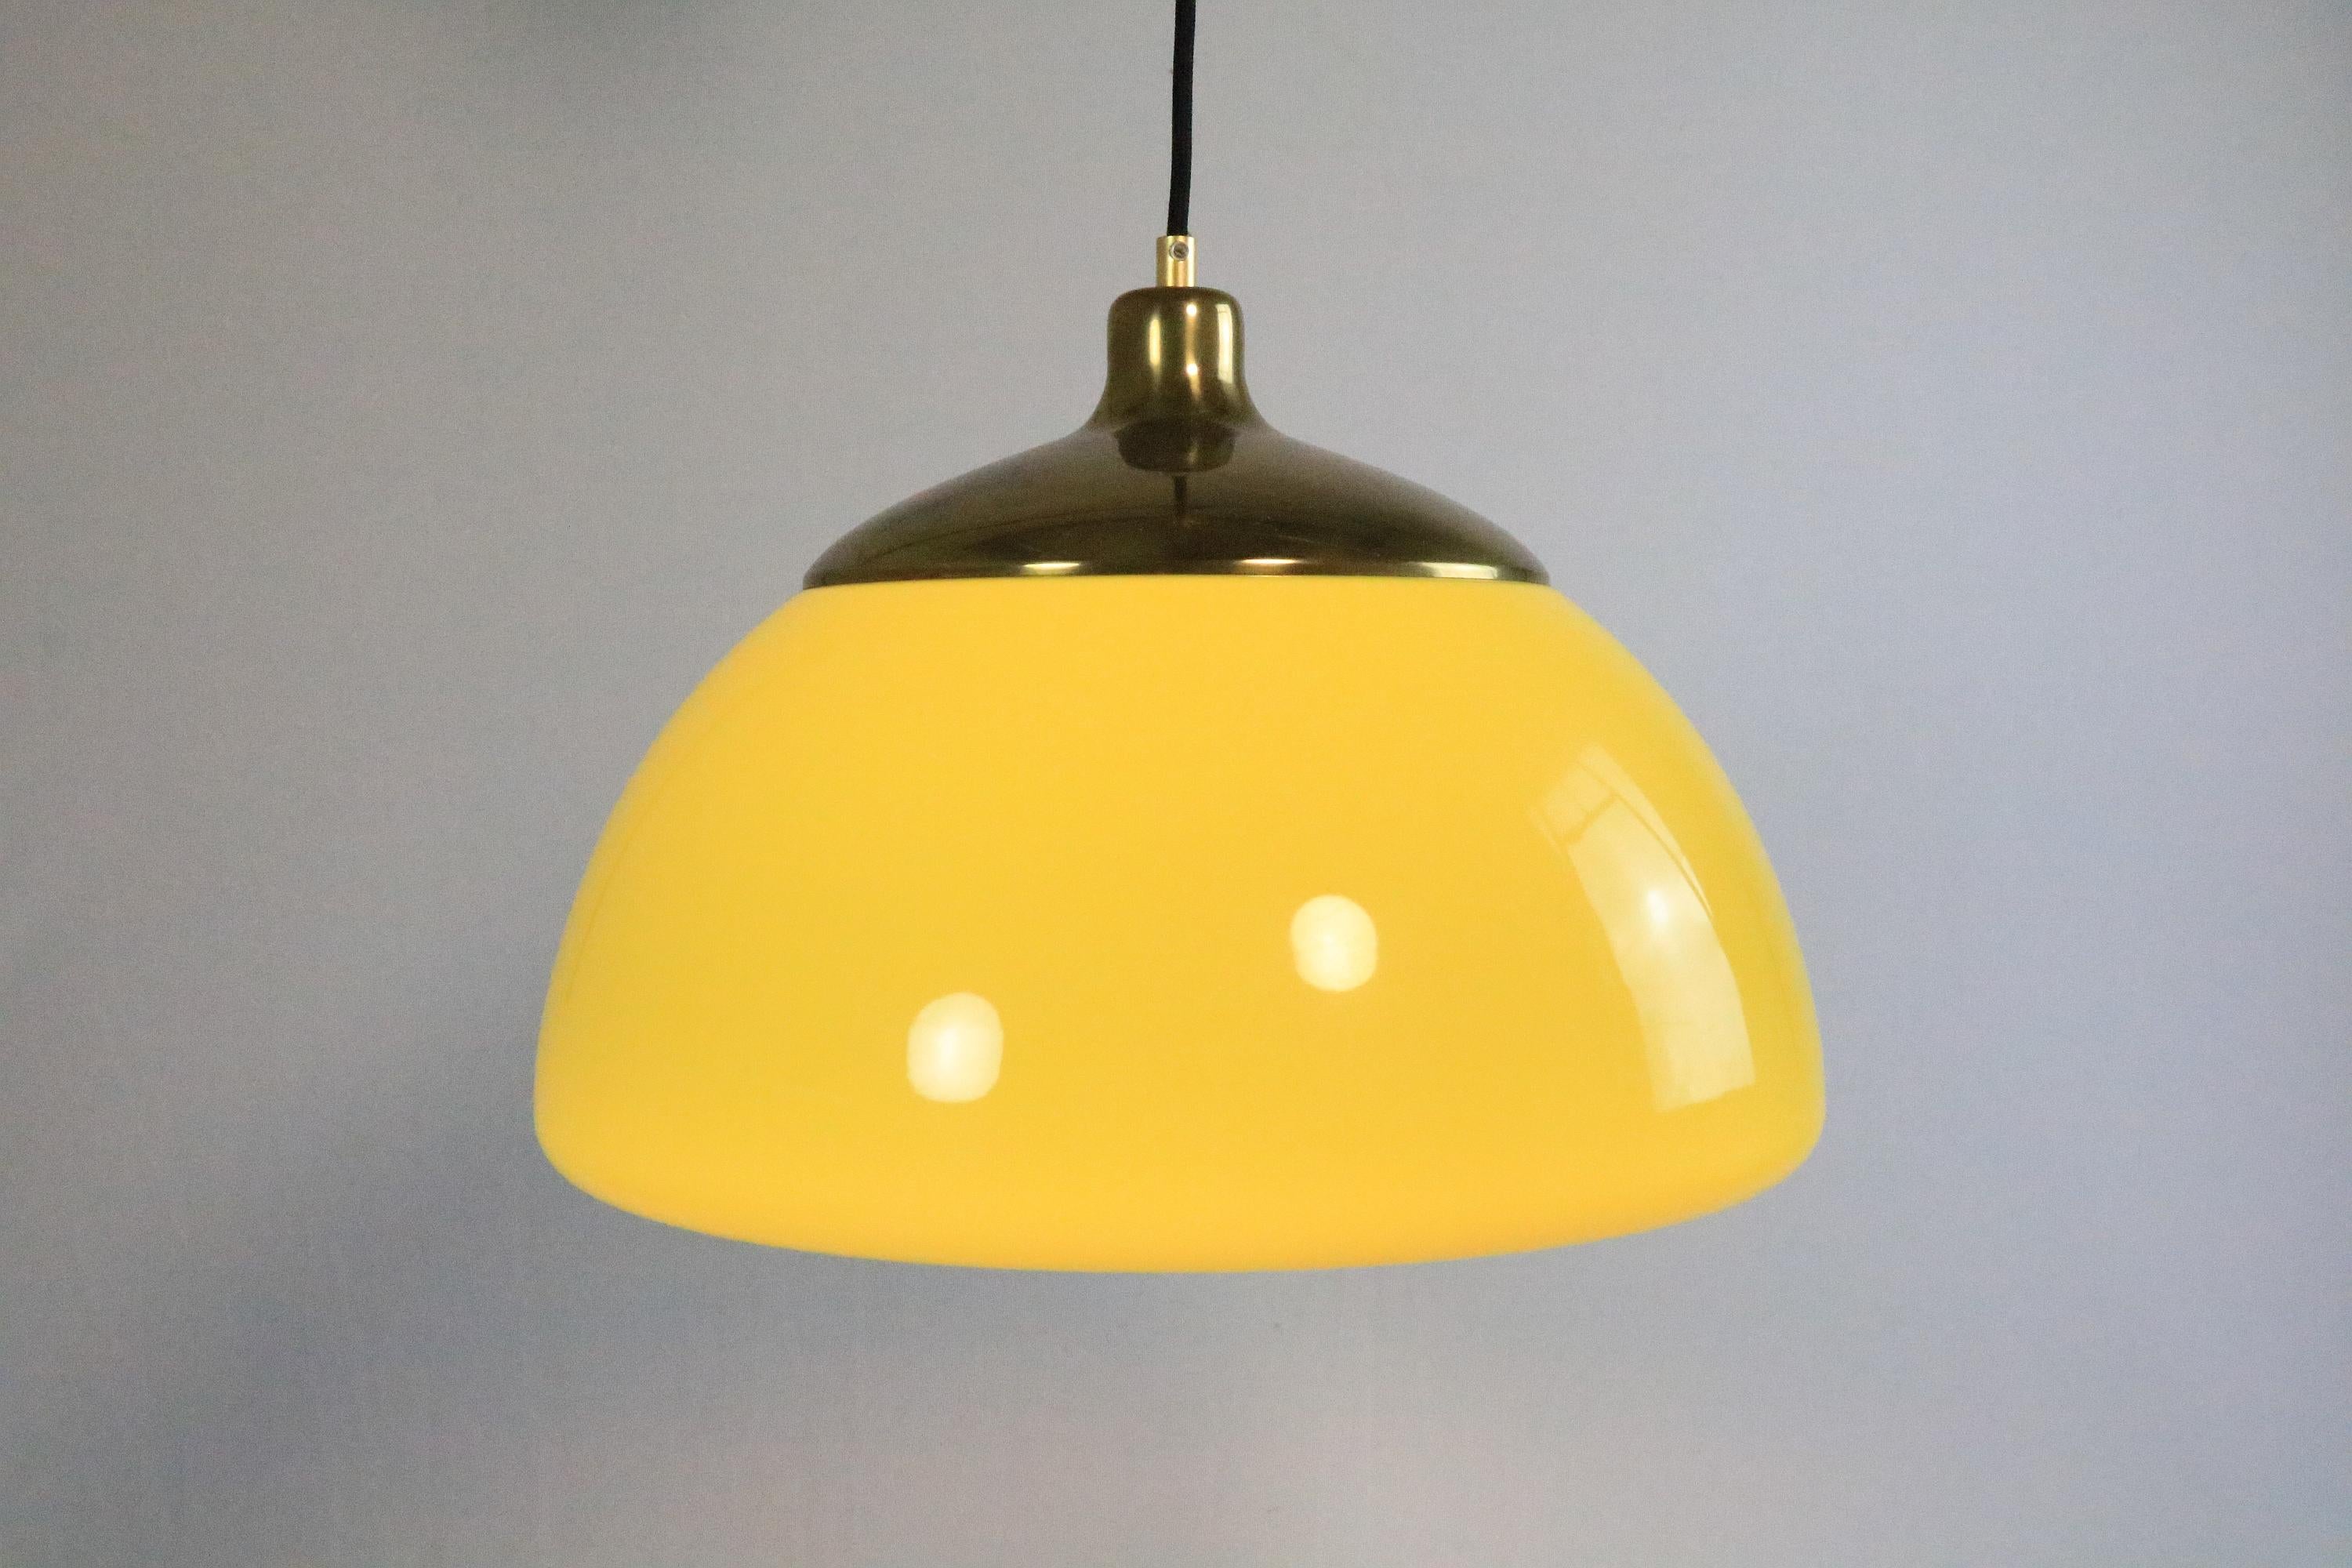 Magnifique lampe suspendue de Cosack, Allemagne.

Couleur très rare. Le jaune prend une teinte plus chaude lorsque la lumière est allumée.
La couleur attrayante est complétée par les pièces en laiton.

L'ancien câble spiralé réglable a été remplacé